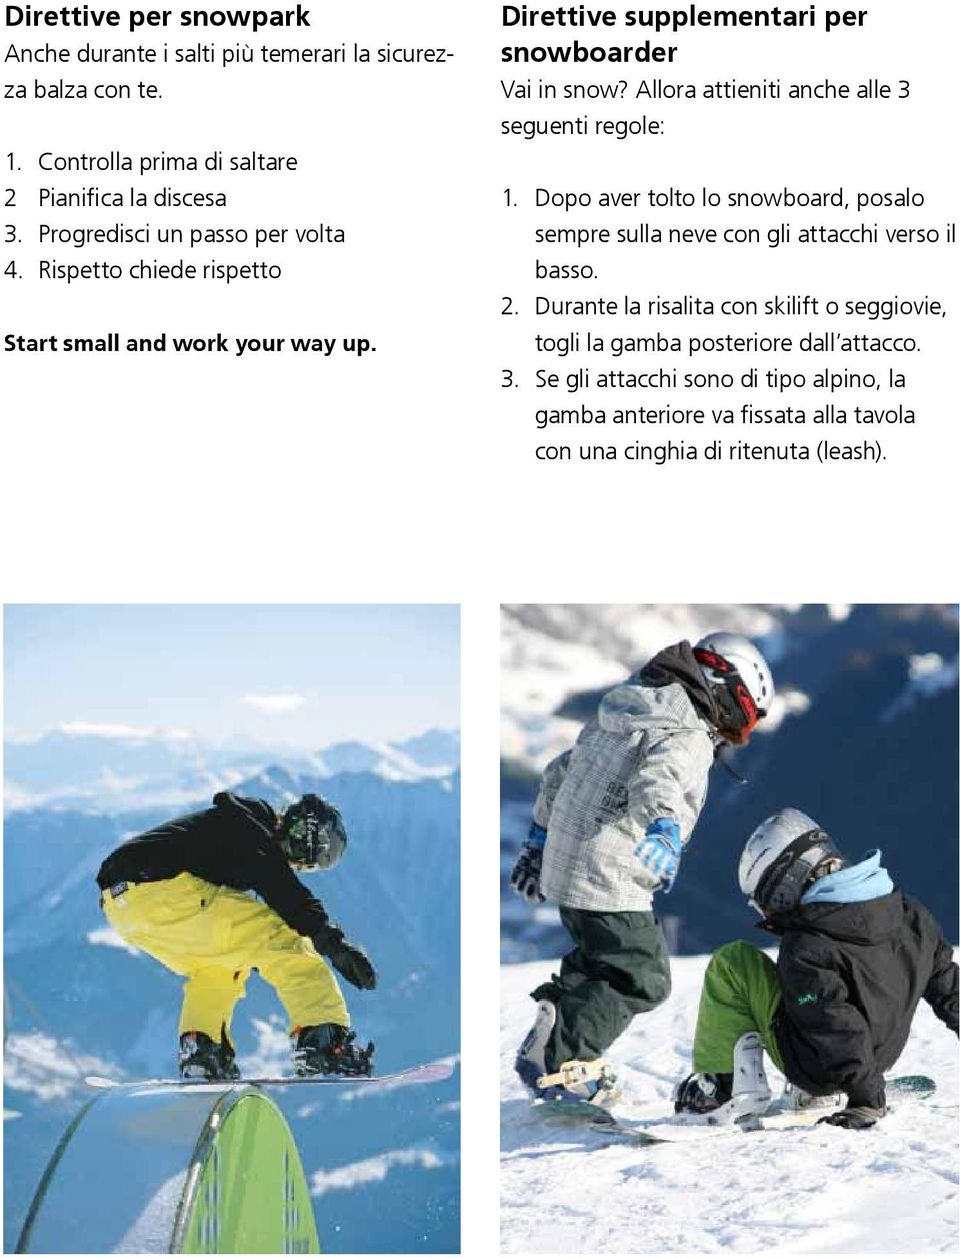 Allora attieniti anche alle 3 seguenti regole: 1. Dopo aver tolto lo snowboard, posalo sempre sulla neve con gli attacchi verso il basso. 2.